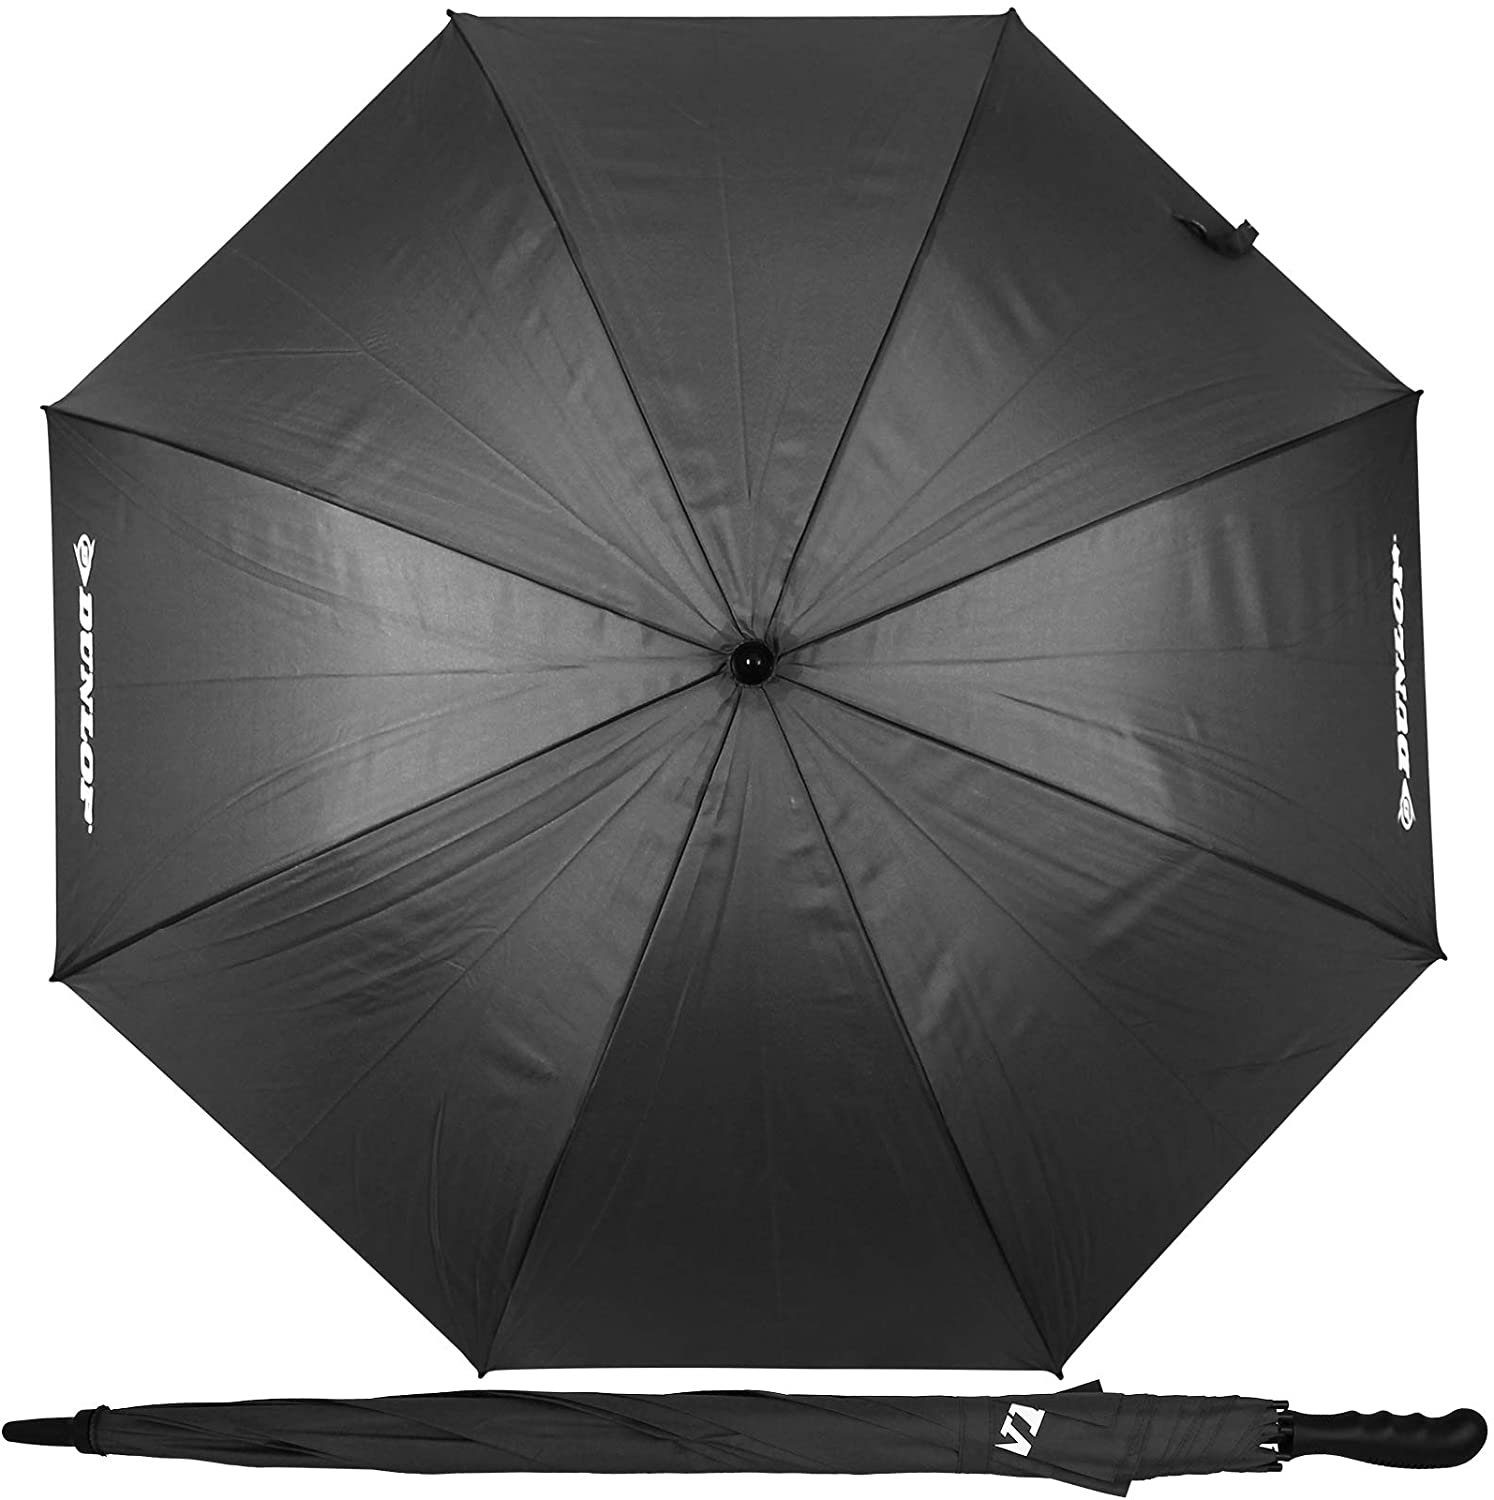 Dokado Partnerschirm XXL Paar Regenschirm 130cm mit Farbwahl Partnerschirm für 2 Personen Stockschirm Familienschirm Doppelregenschirm Dunlop schwarz